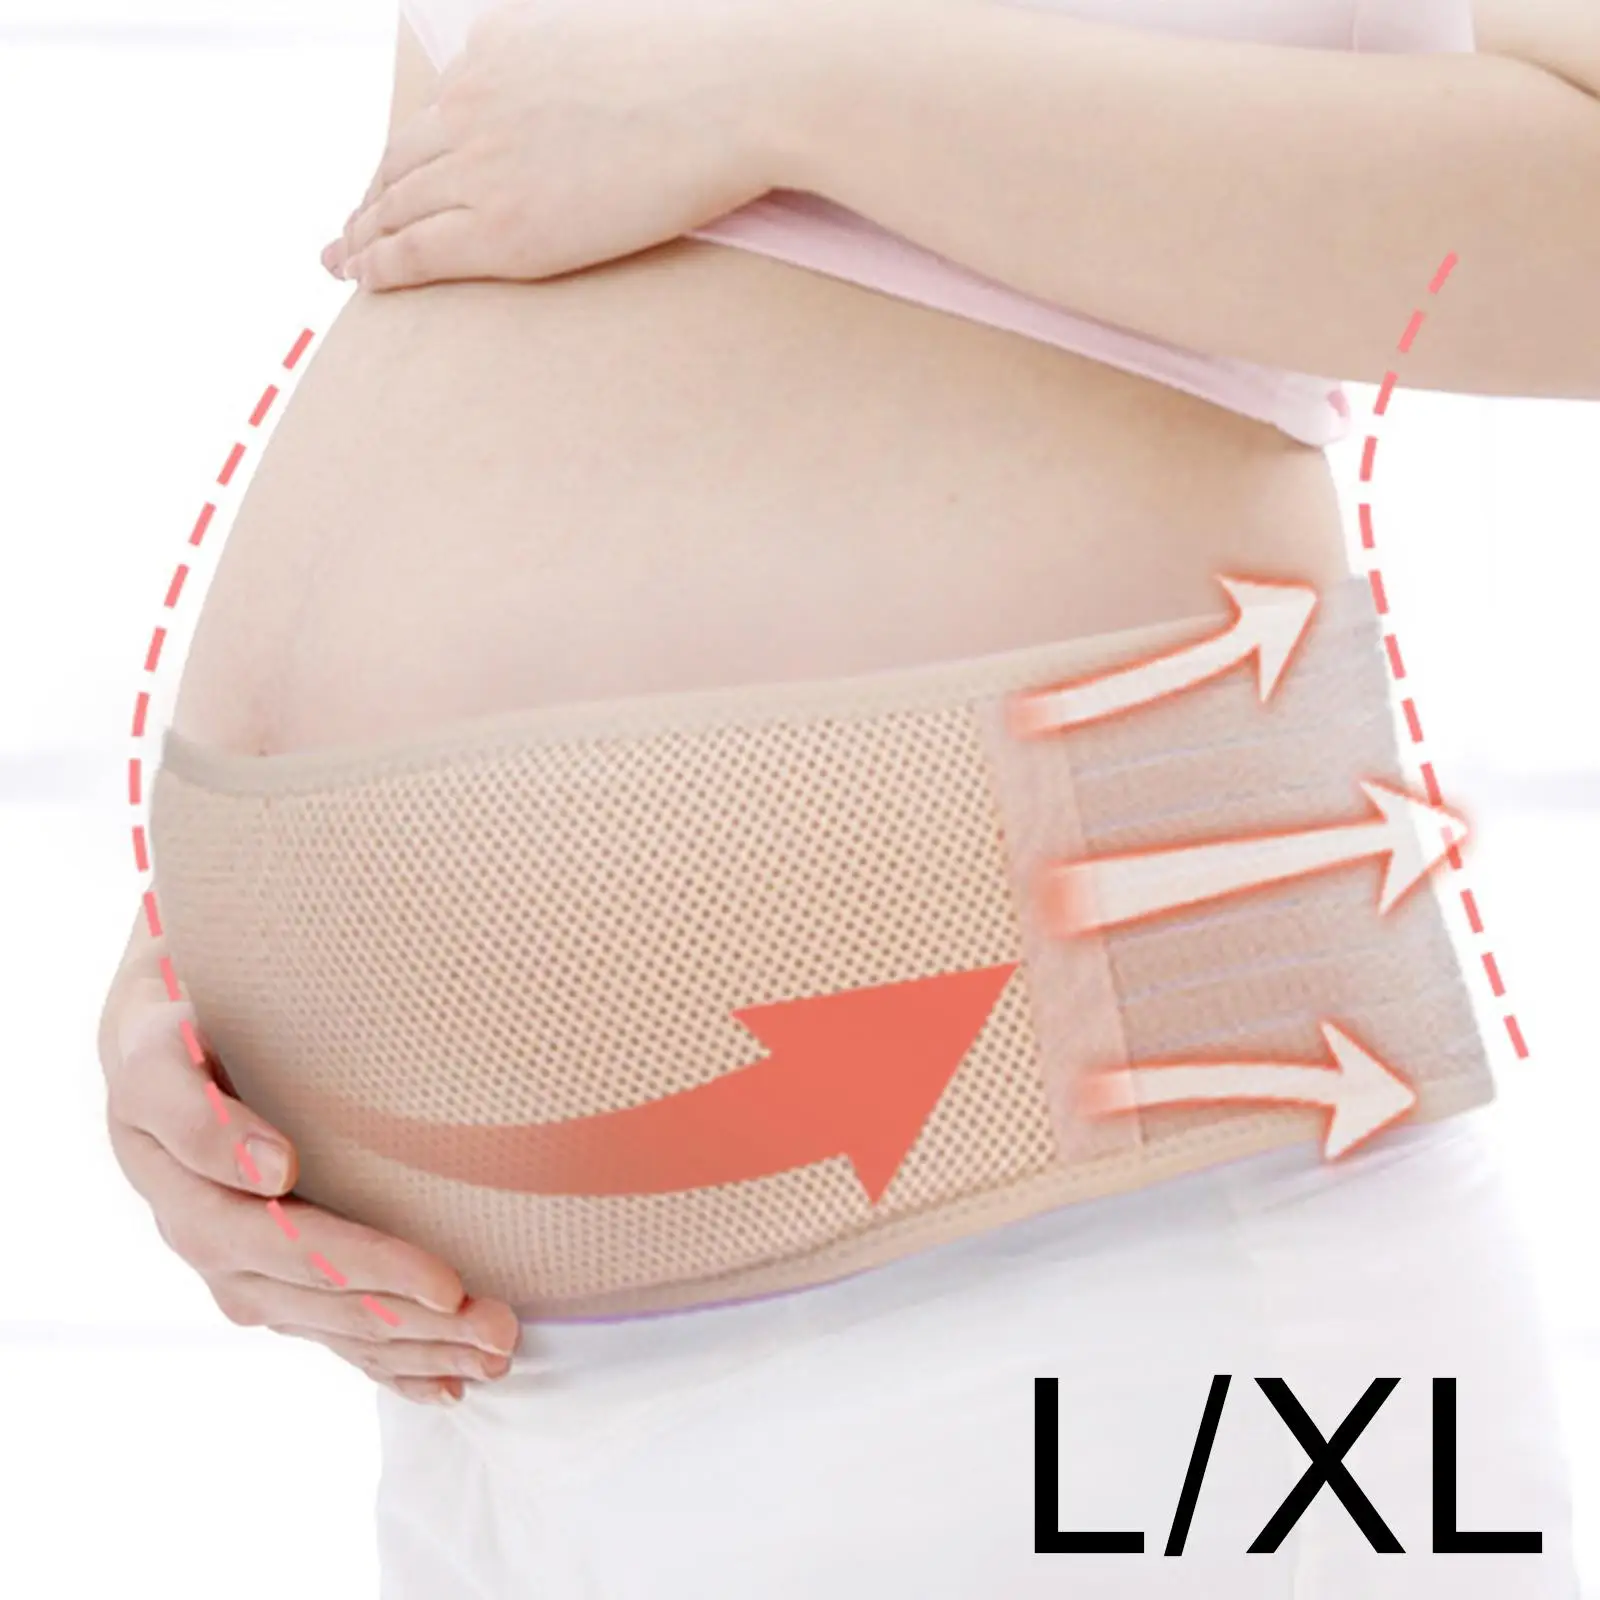 Maternity Belt Lightweight Adjustable Pelvis/Waist/Back/Abdominal Support Belt Pregnancy Belly Support Band Tummy Band Sling